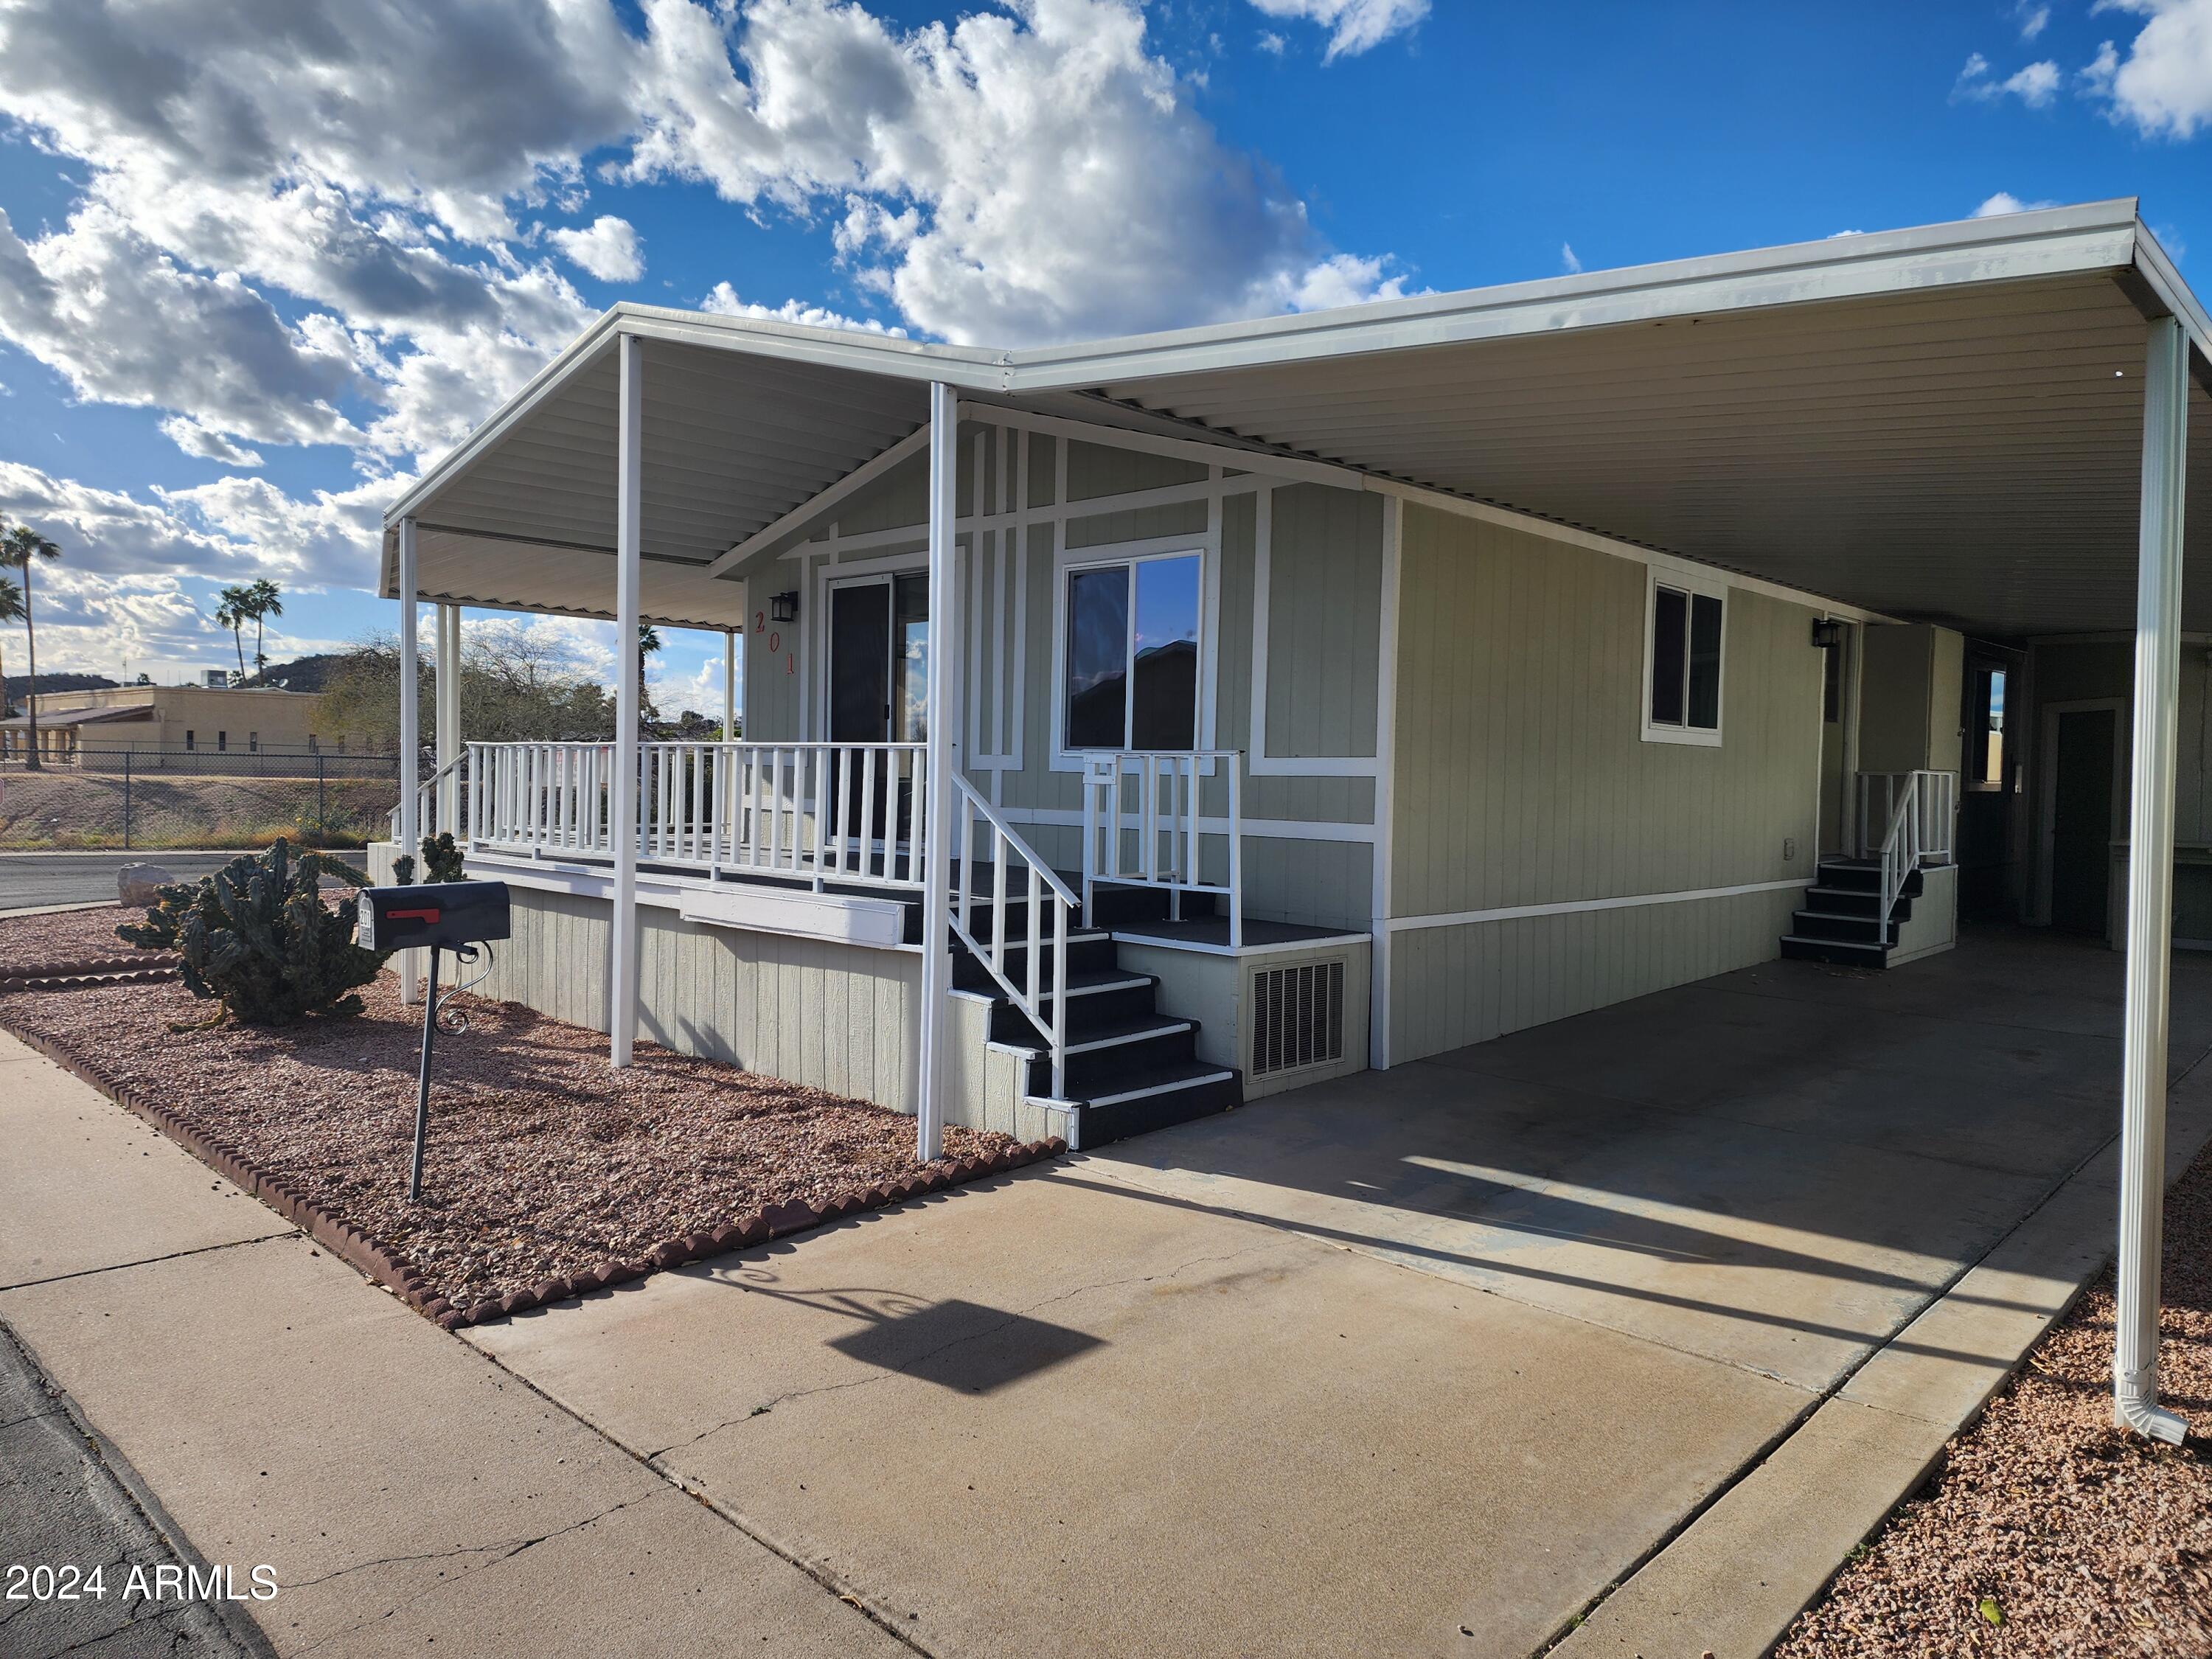 View Phoenix, AZ 85050 mobile home